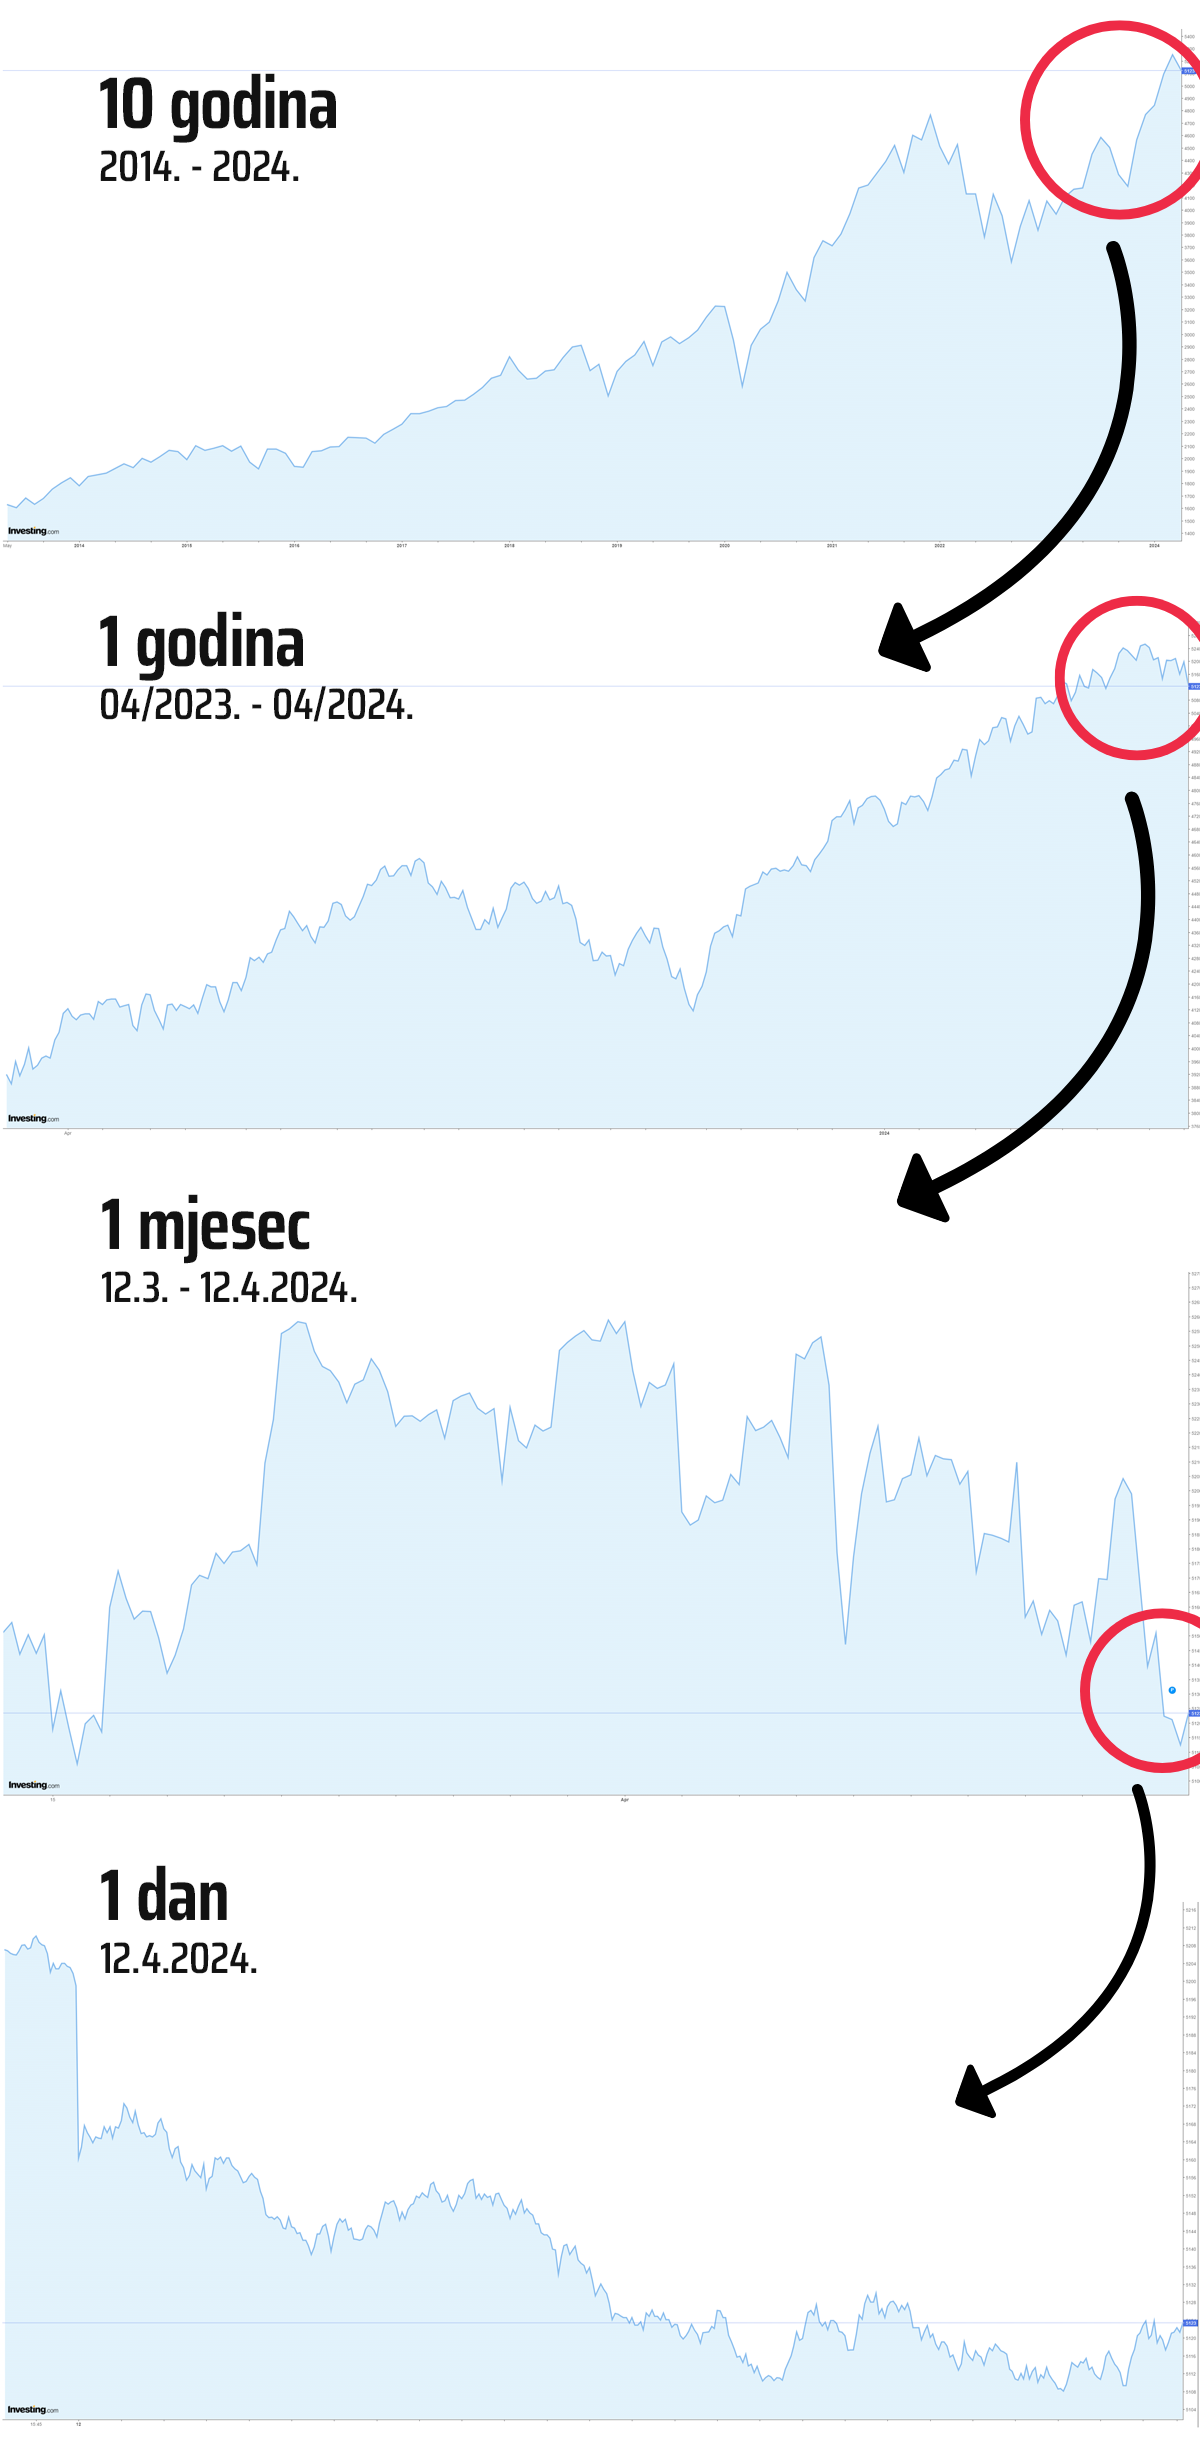 Genius by InterCapital - usporedba grafa S&P500 i kretanja tržišta u različitim vremenskim periodima